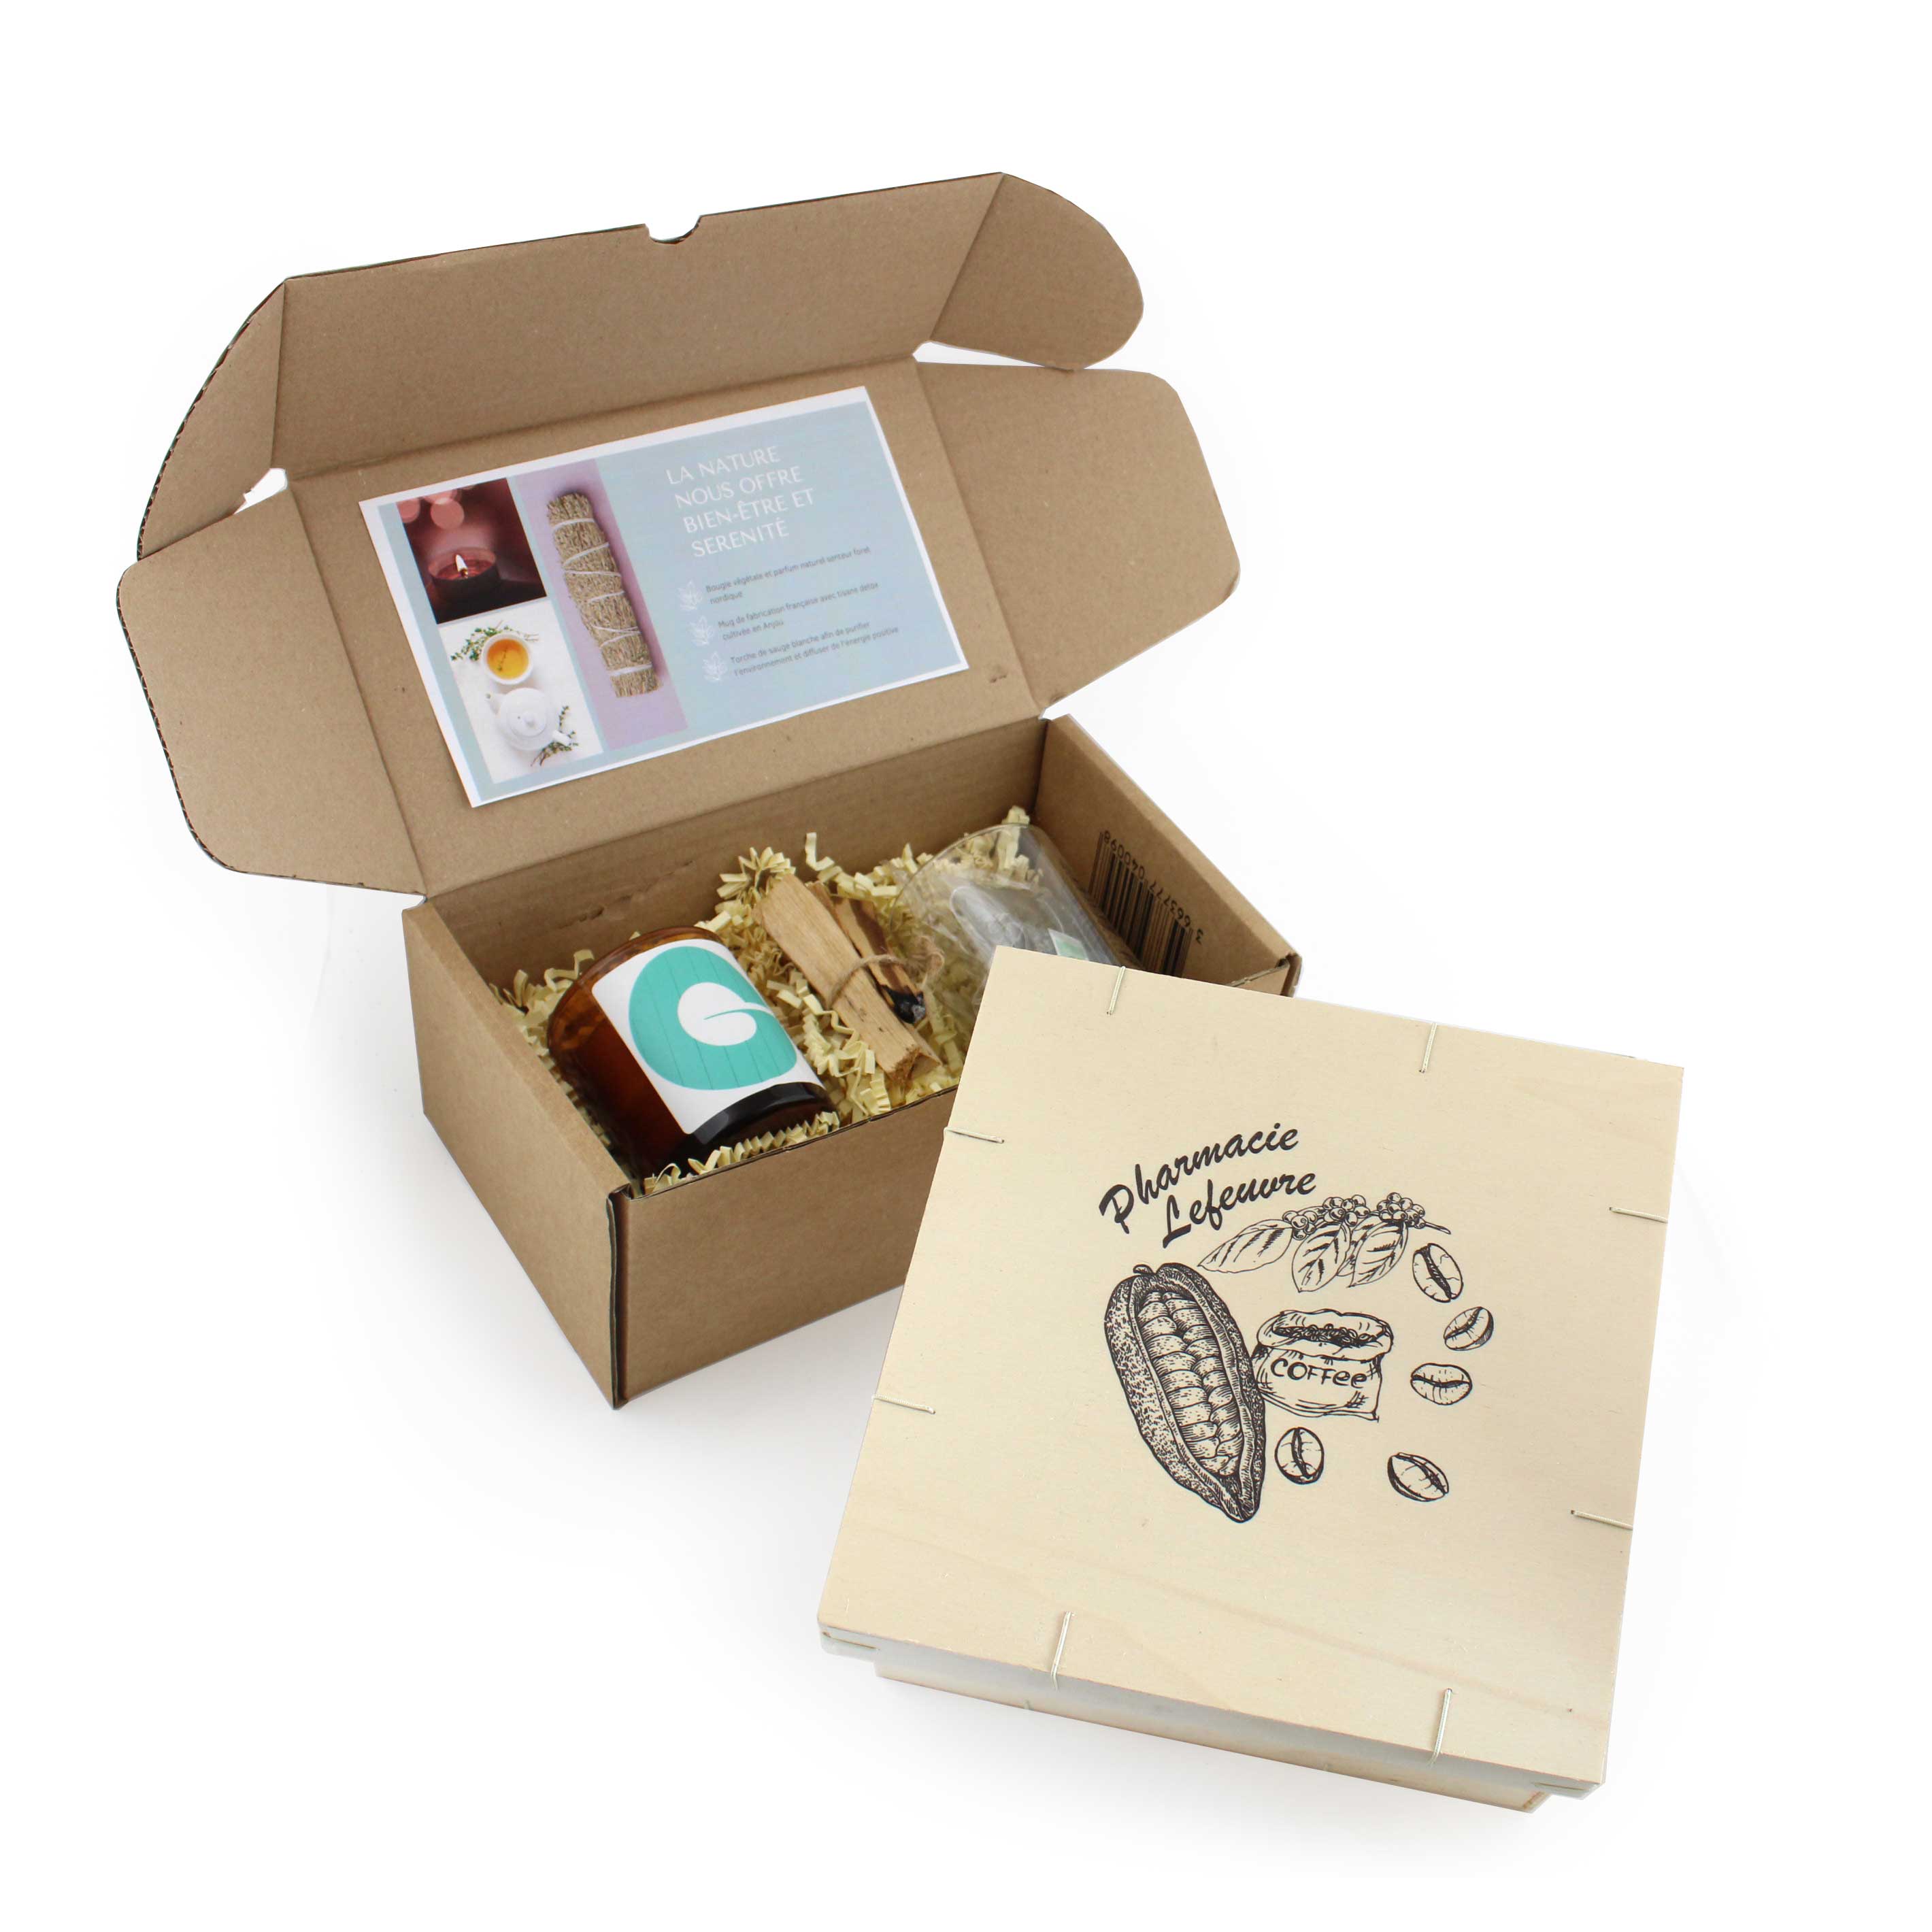 Les nouvelles Box Idées Nature, un cadeau bien-être